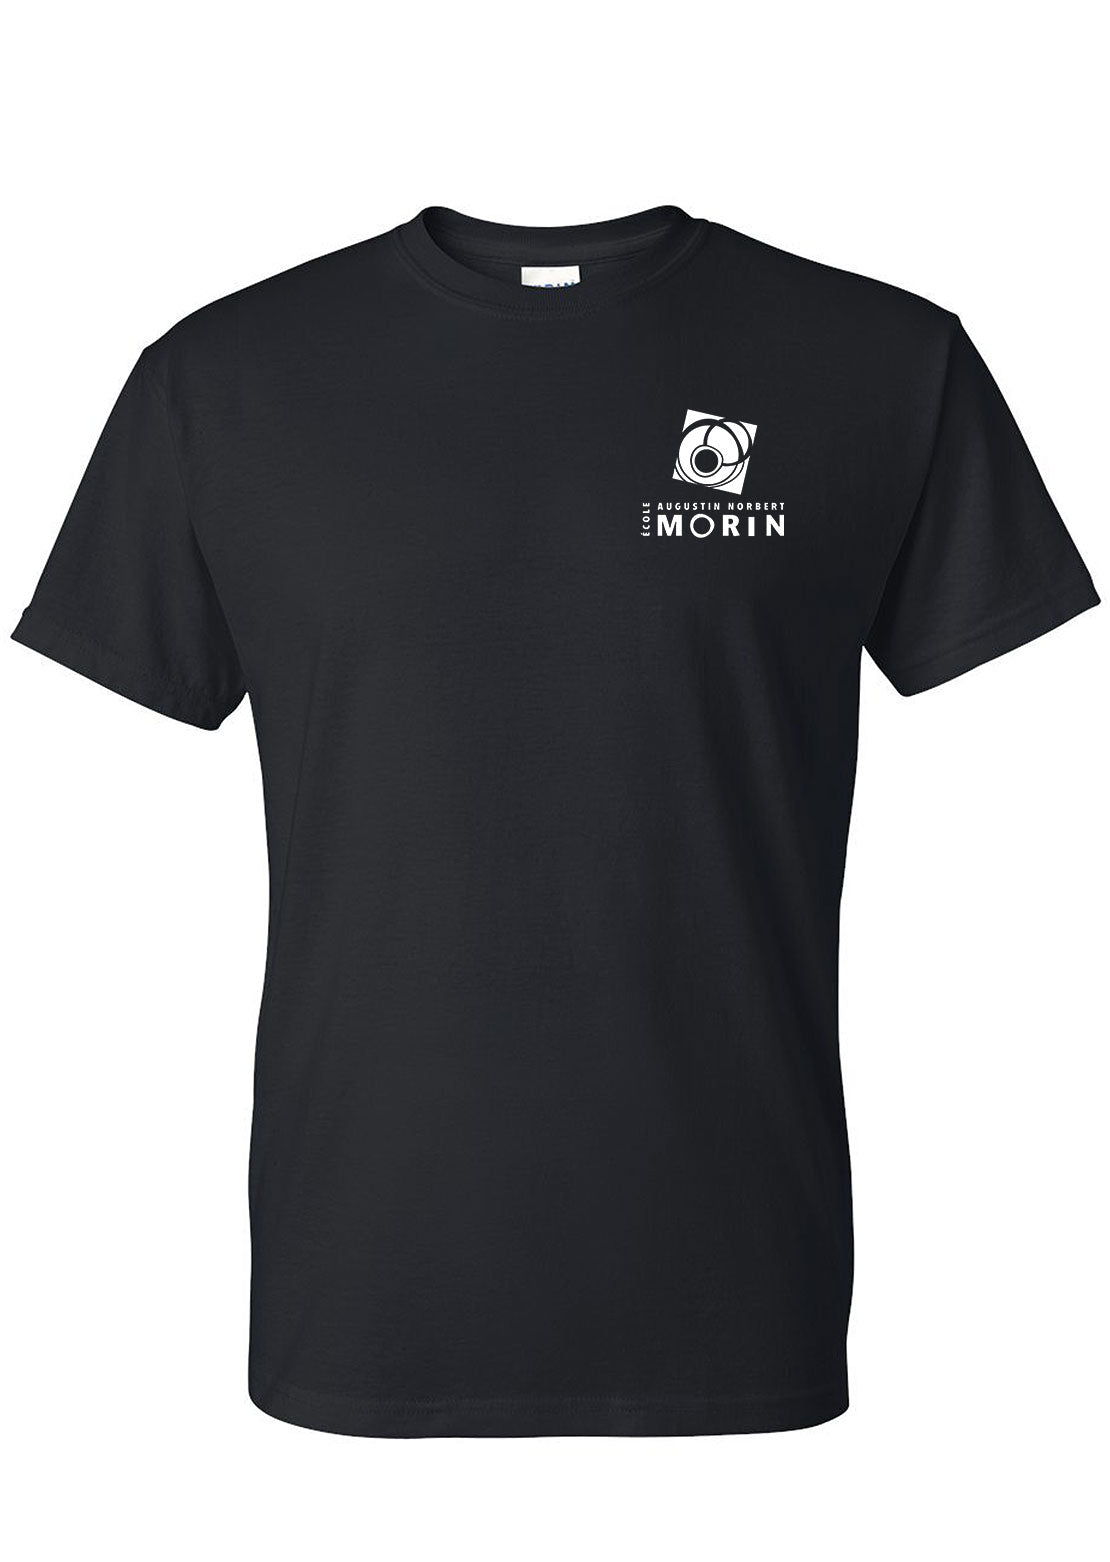 AN-MORIN T-Shirt Unisex Black